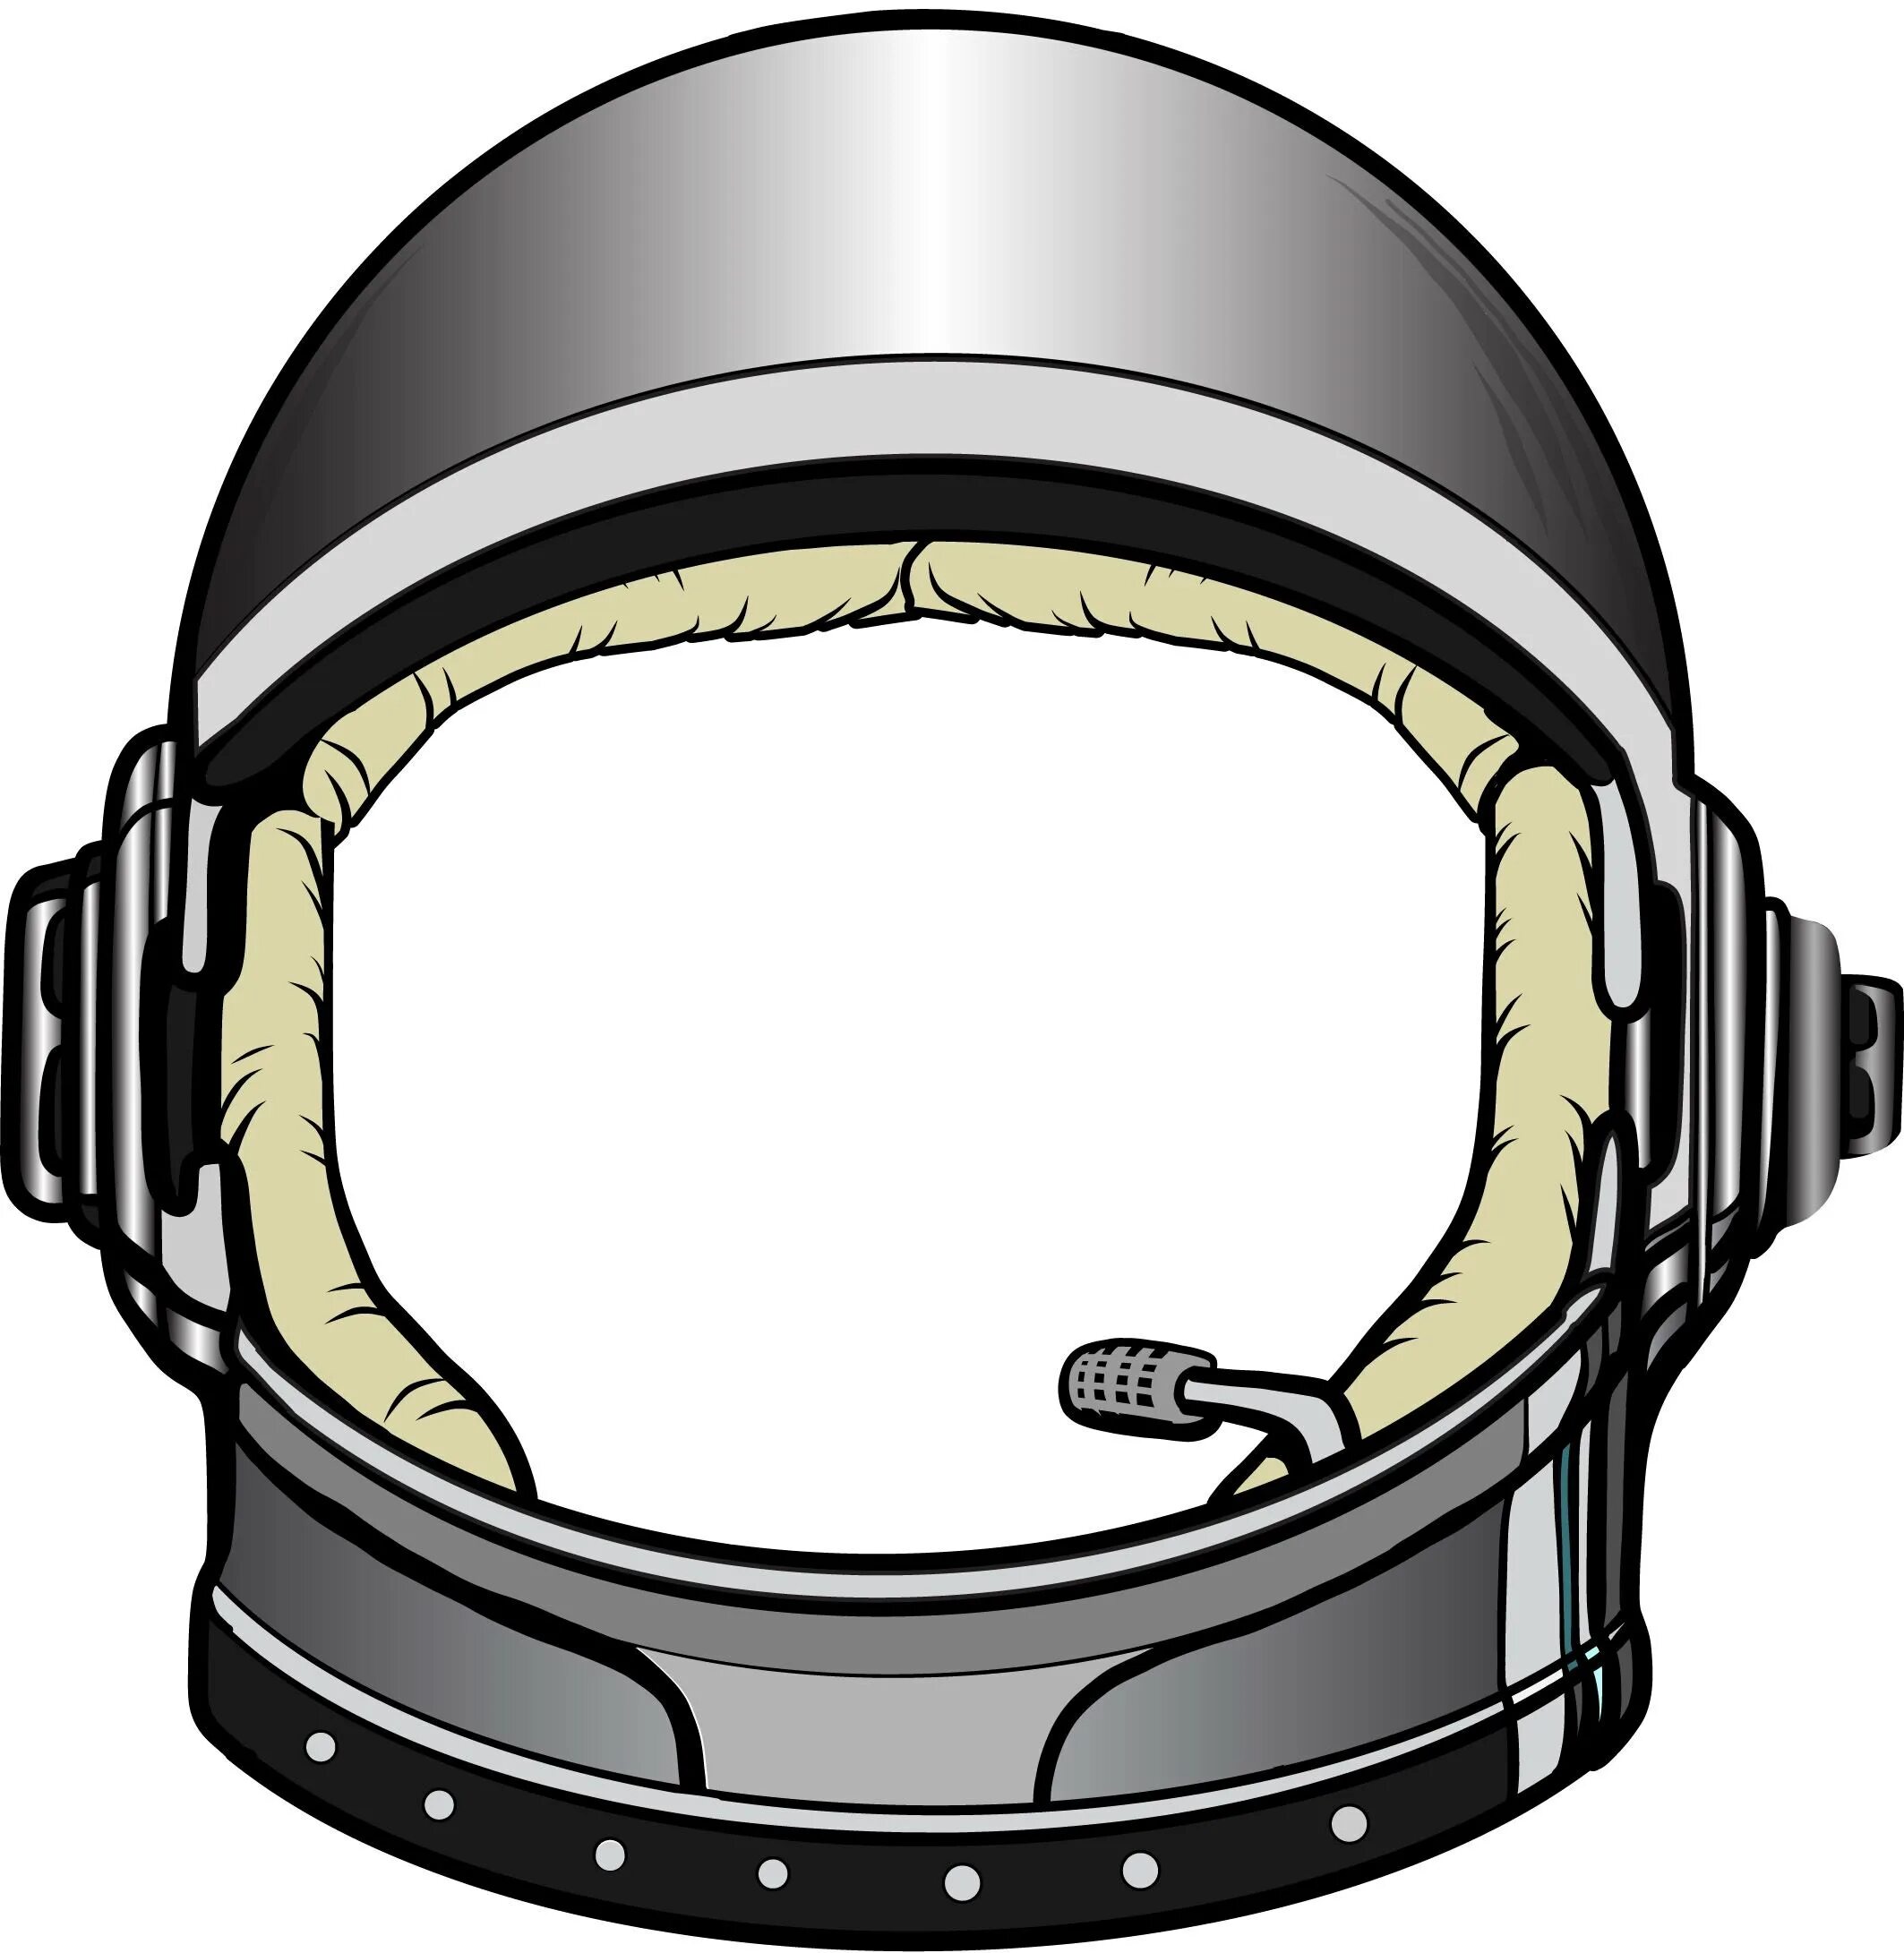 Шлем Astronaut Helmet. Шлем скафандра Космонавта. Шлем Космонавта SD IFI. Отражение в шлеме Космонавта сбоку. Шлем космонавта шаблон для вырезания распечатать